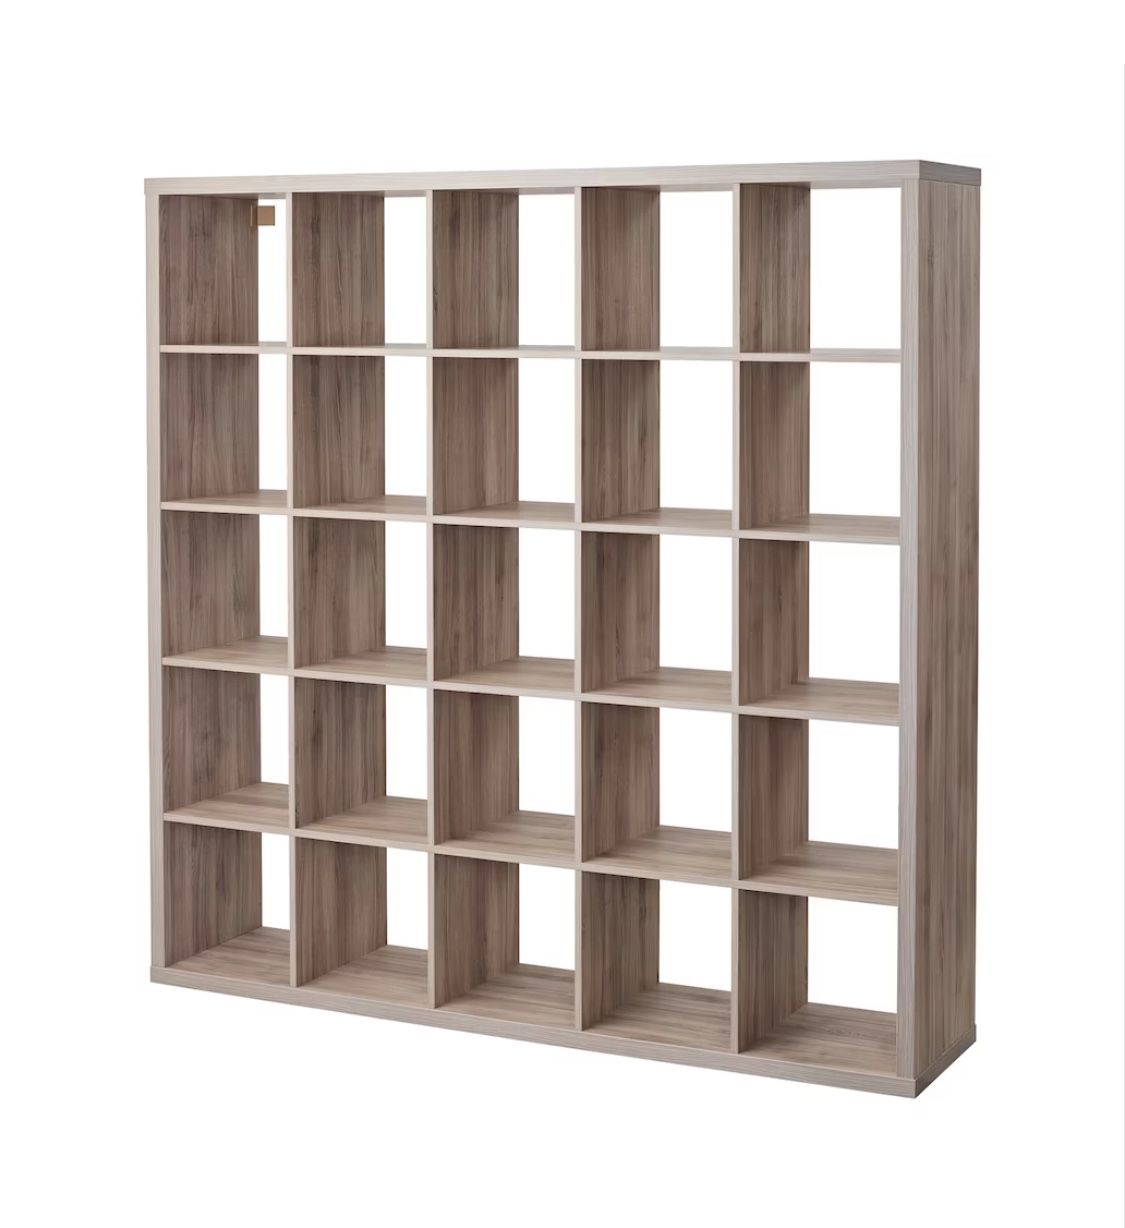 IKEA KALLAX 5x5 Shelf Unit - Walnut/Light gray